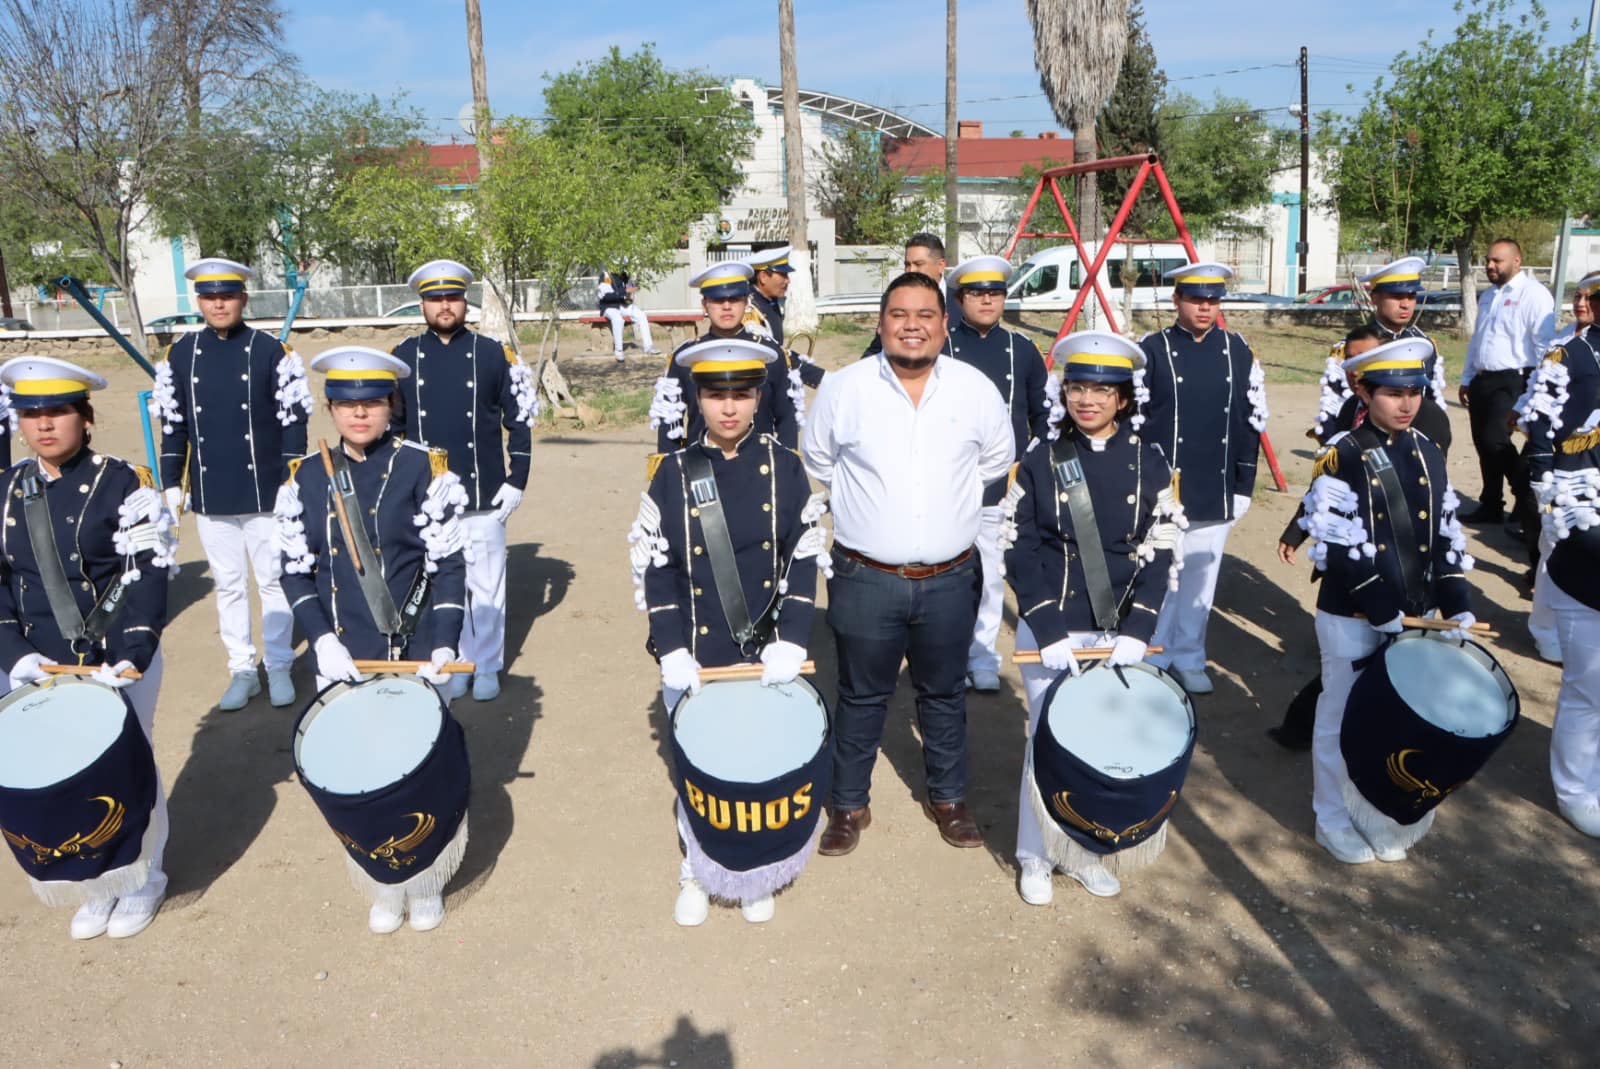 Encabeza MALG ceremonia por natalicio de Benito Juárez